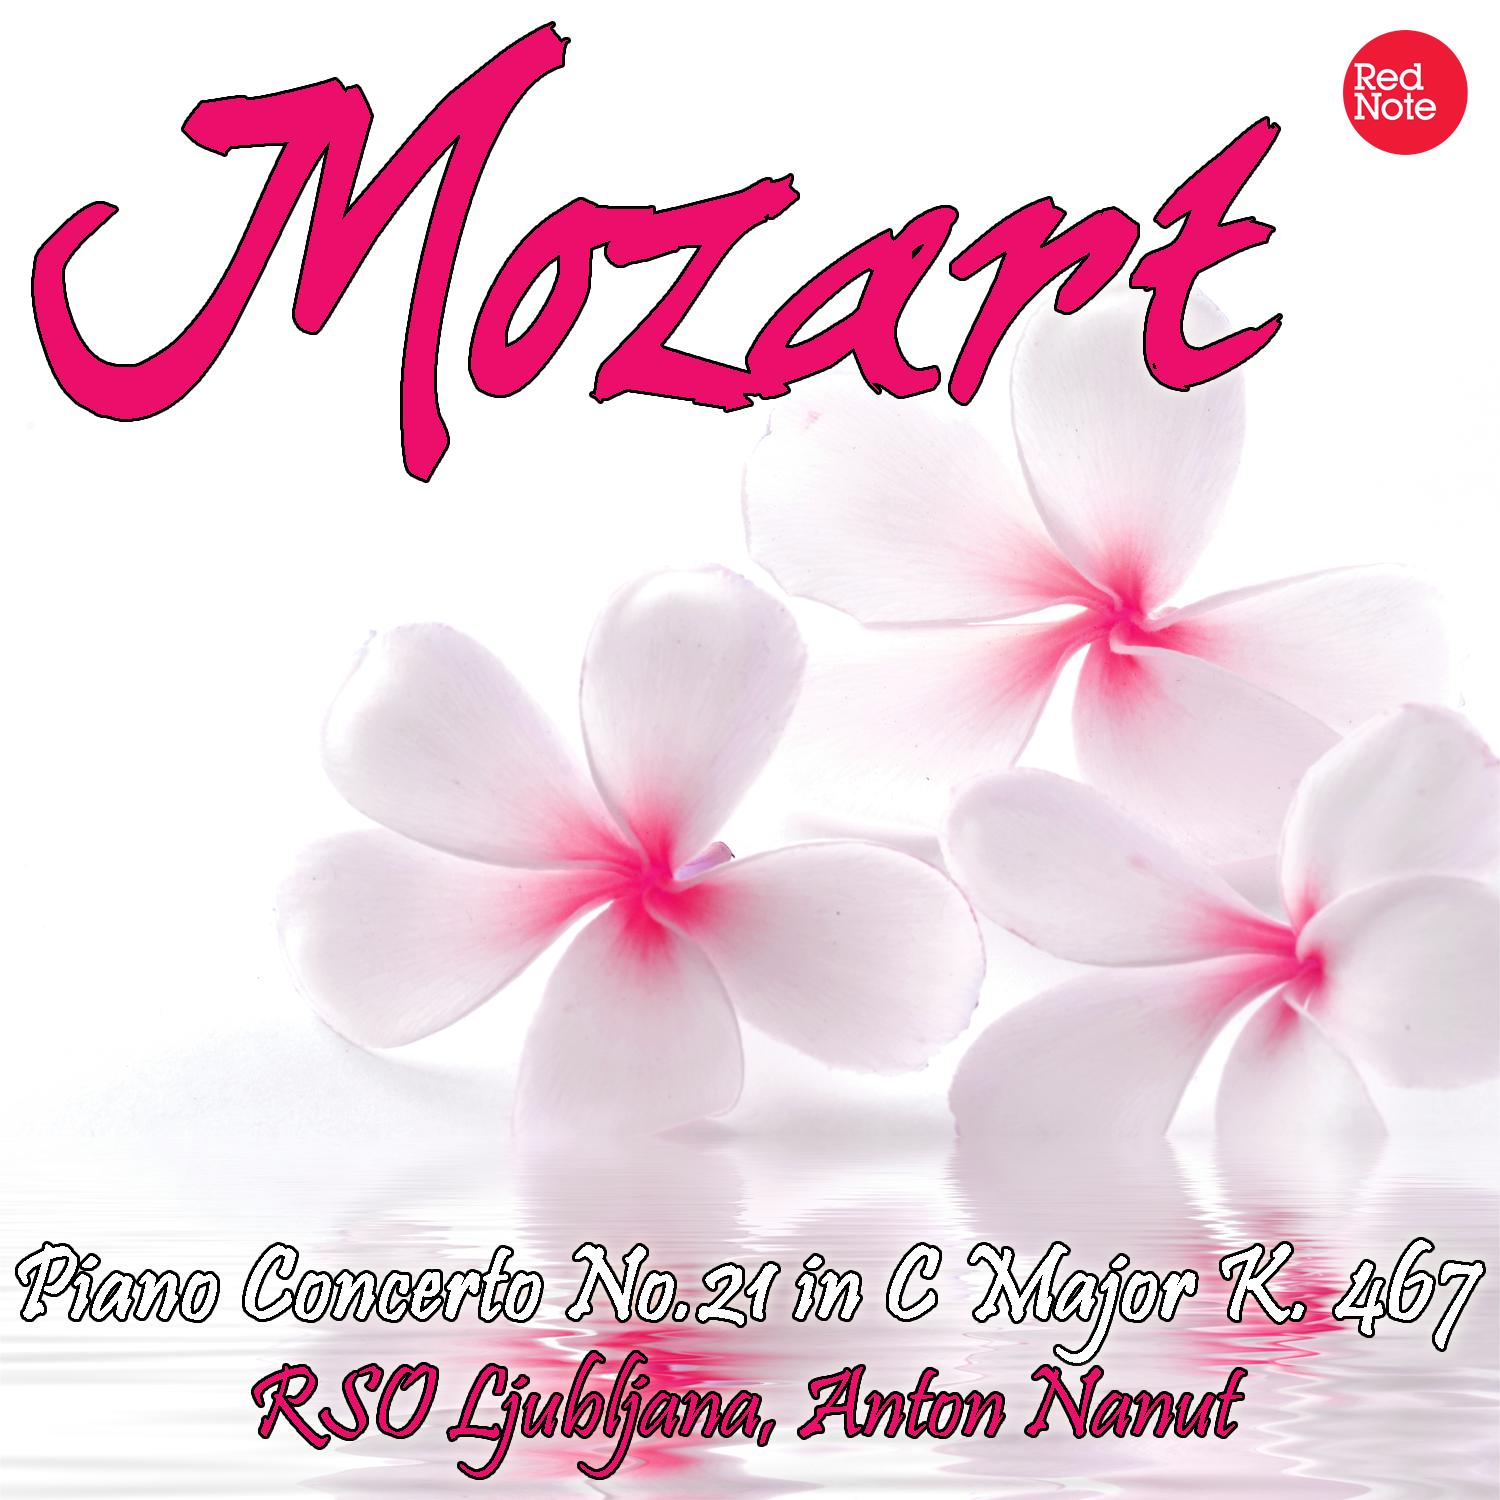 Mozart: Piano Concerto No.21 in C Major K. 467